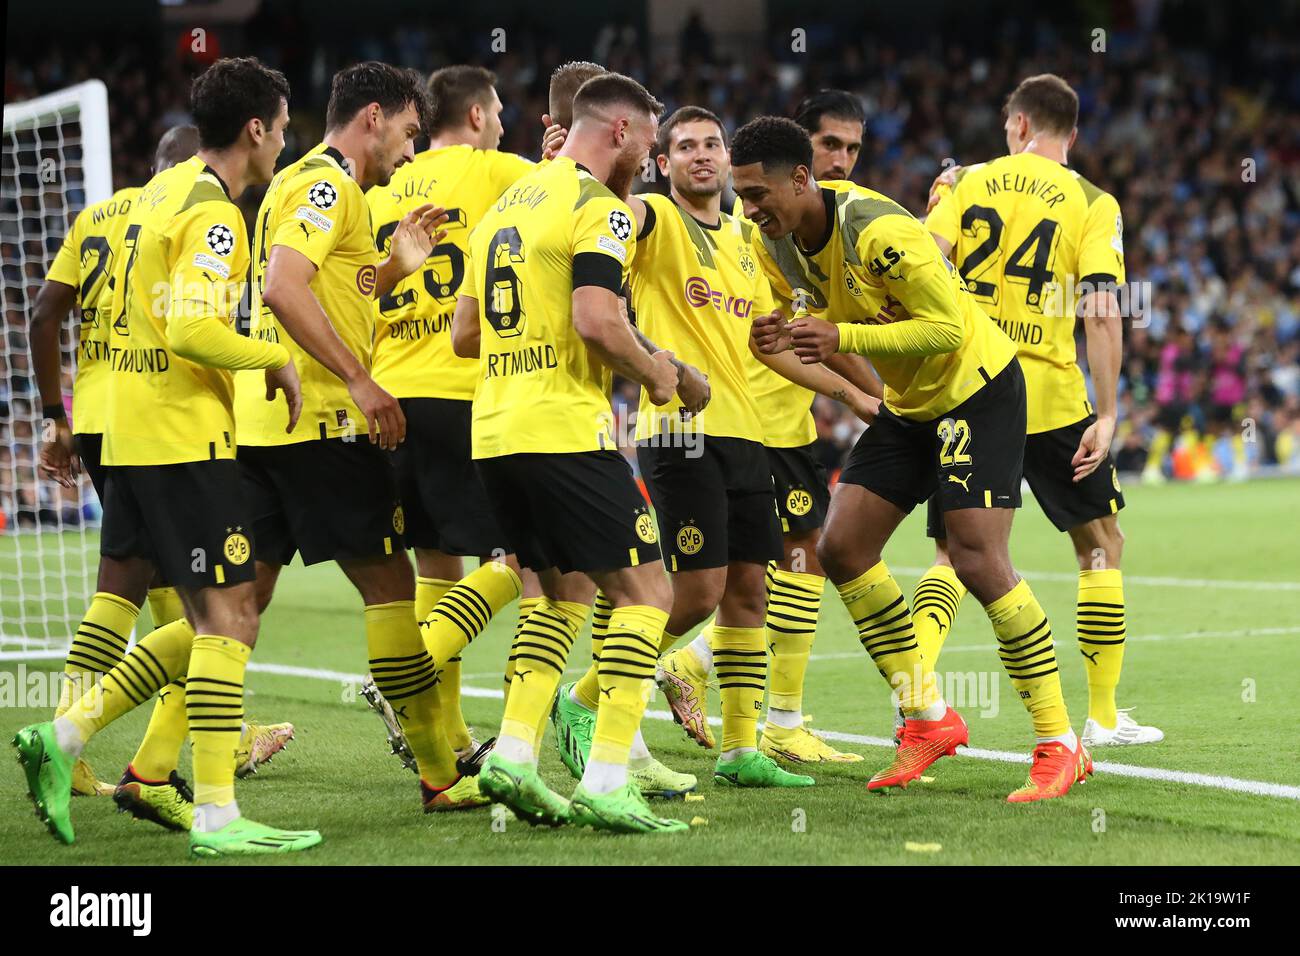 Bellingham guia estreia vitoriosa do Dortmund sobre o Besiktas na Champions  